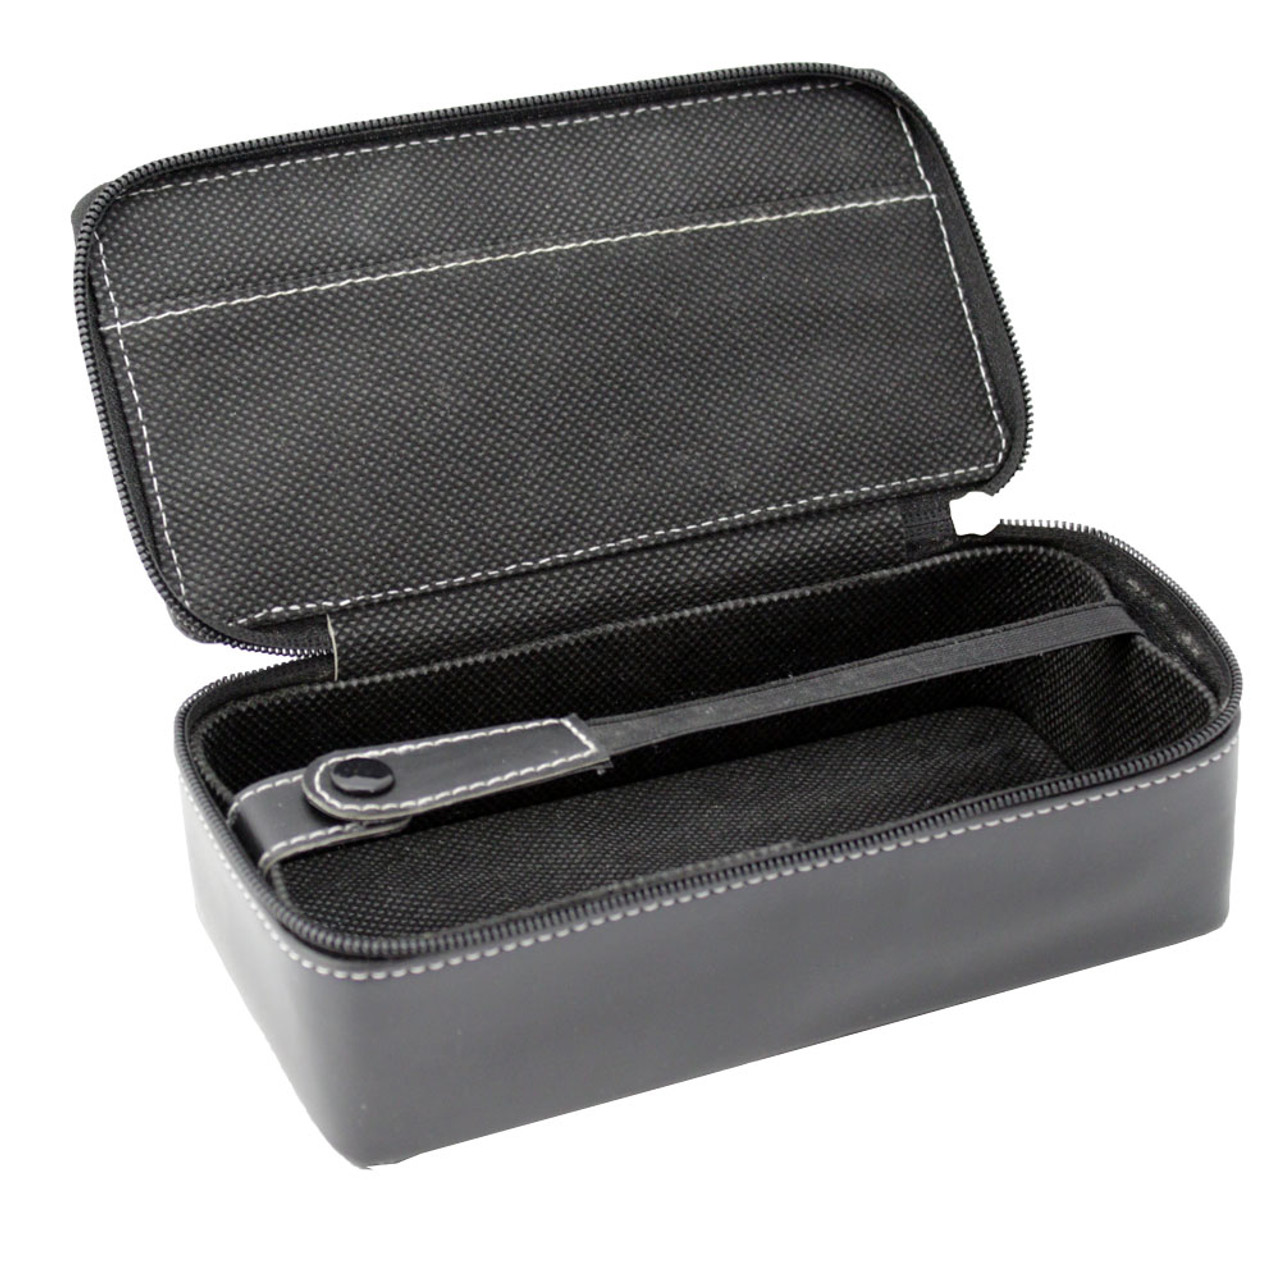 Large Leather Gem Parcel Box Diamond Paper Storage Case Portable